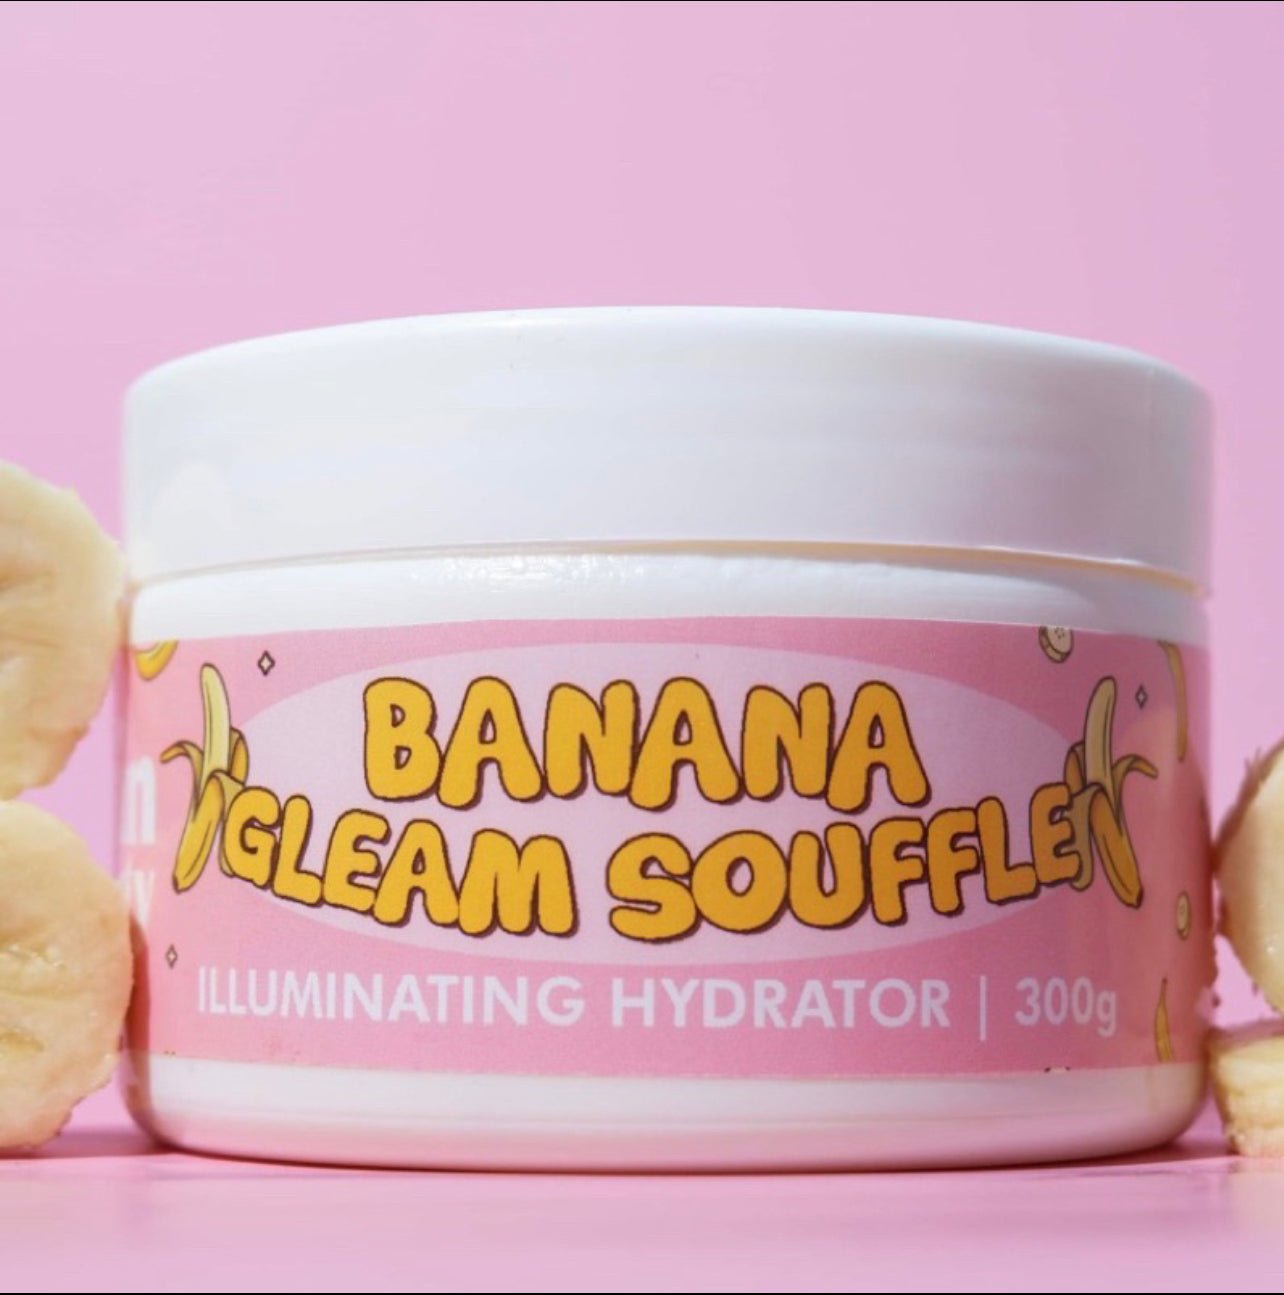 @ “SALE - BUY 1 TAKE 1” JSkin Banana Gleam Souffle (Illuminating Hydrator) 300g